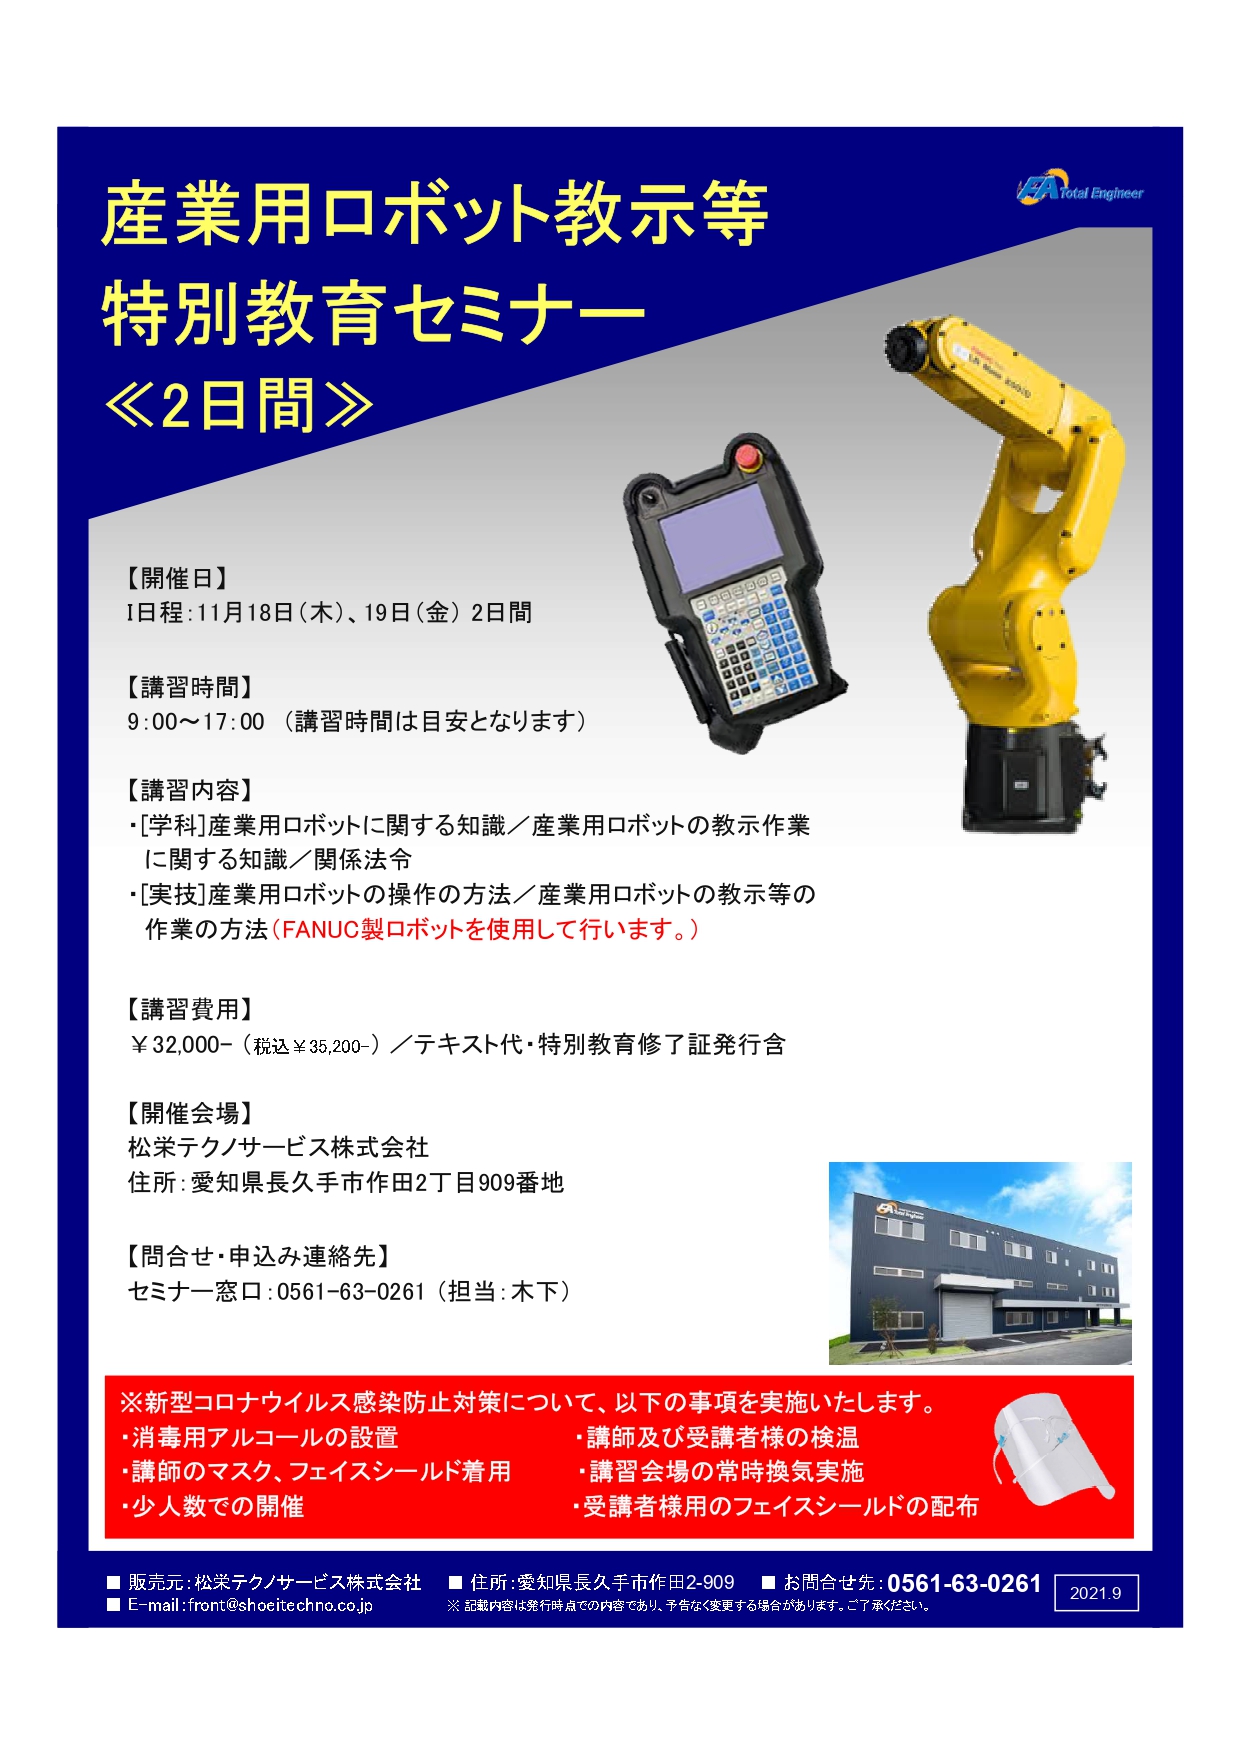 【終了しました】産業用ロボット特別教育（教示等）愛知会場開催のお知らせ【2021年11月】